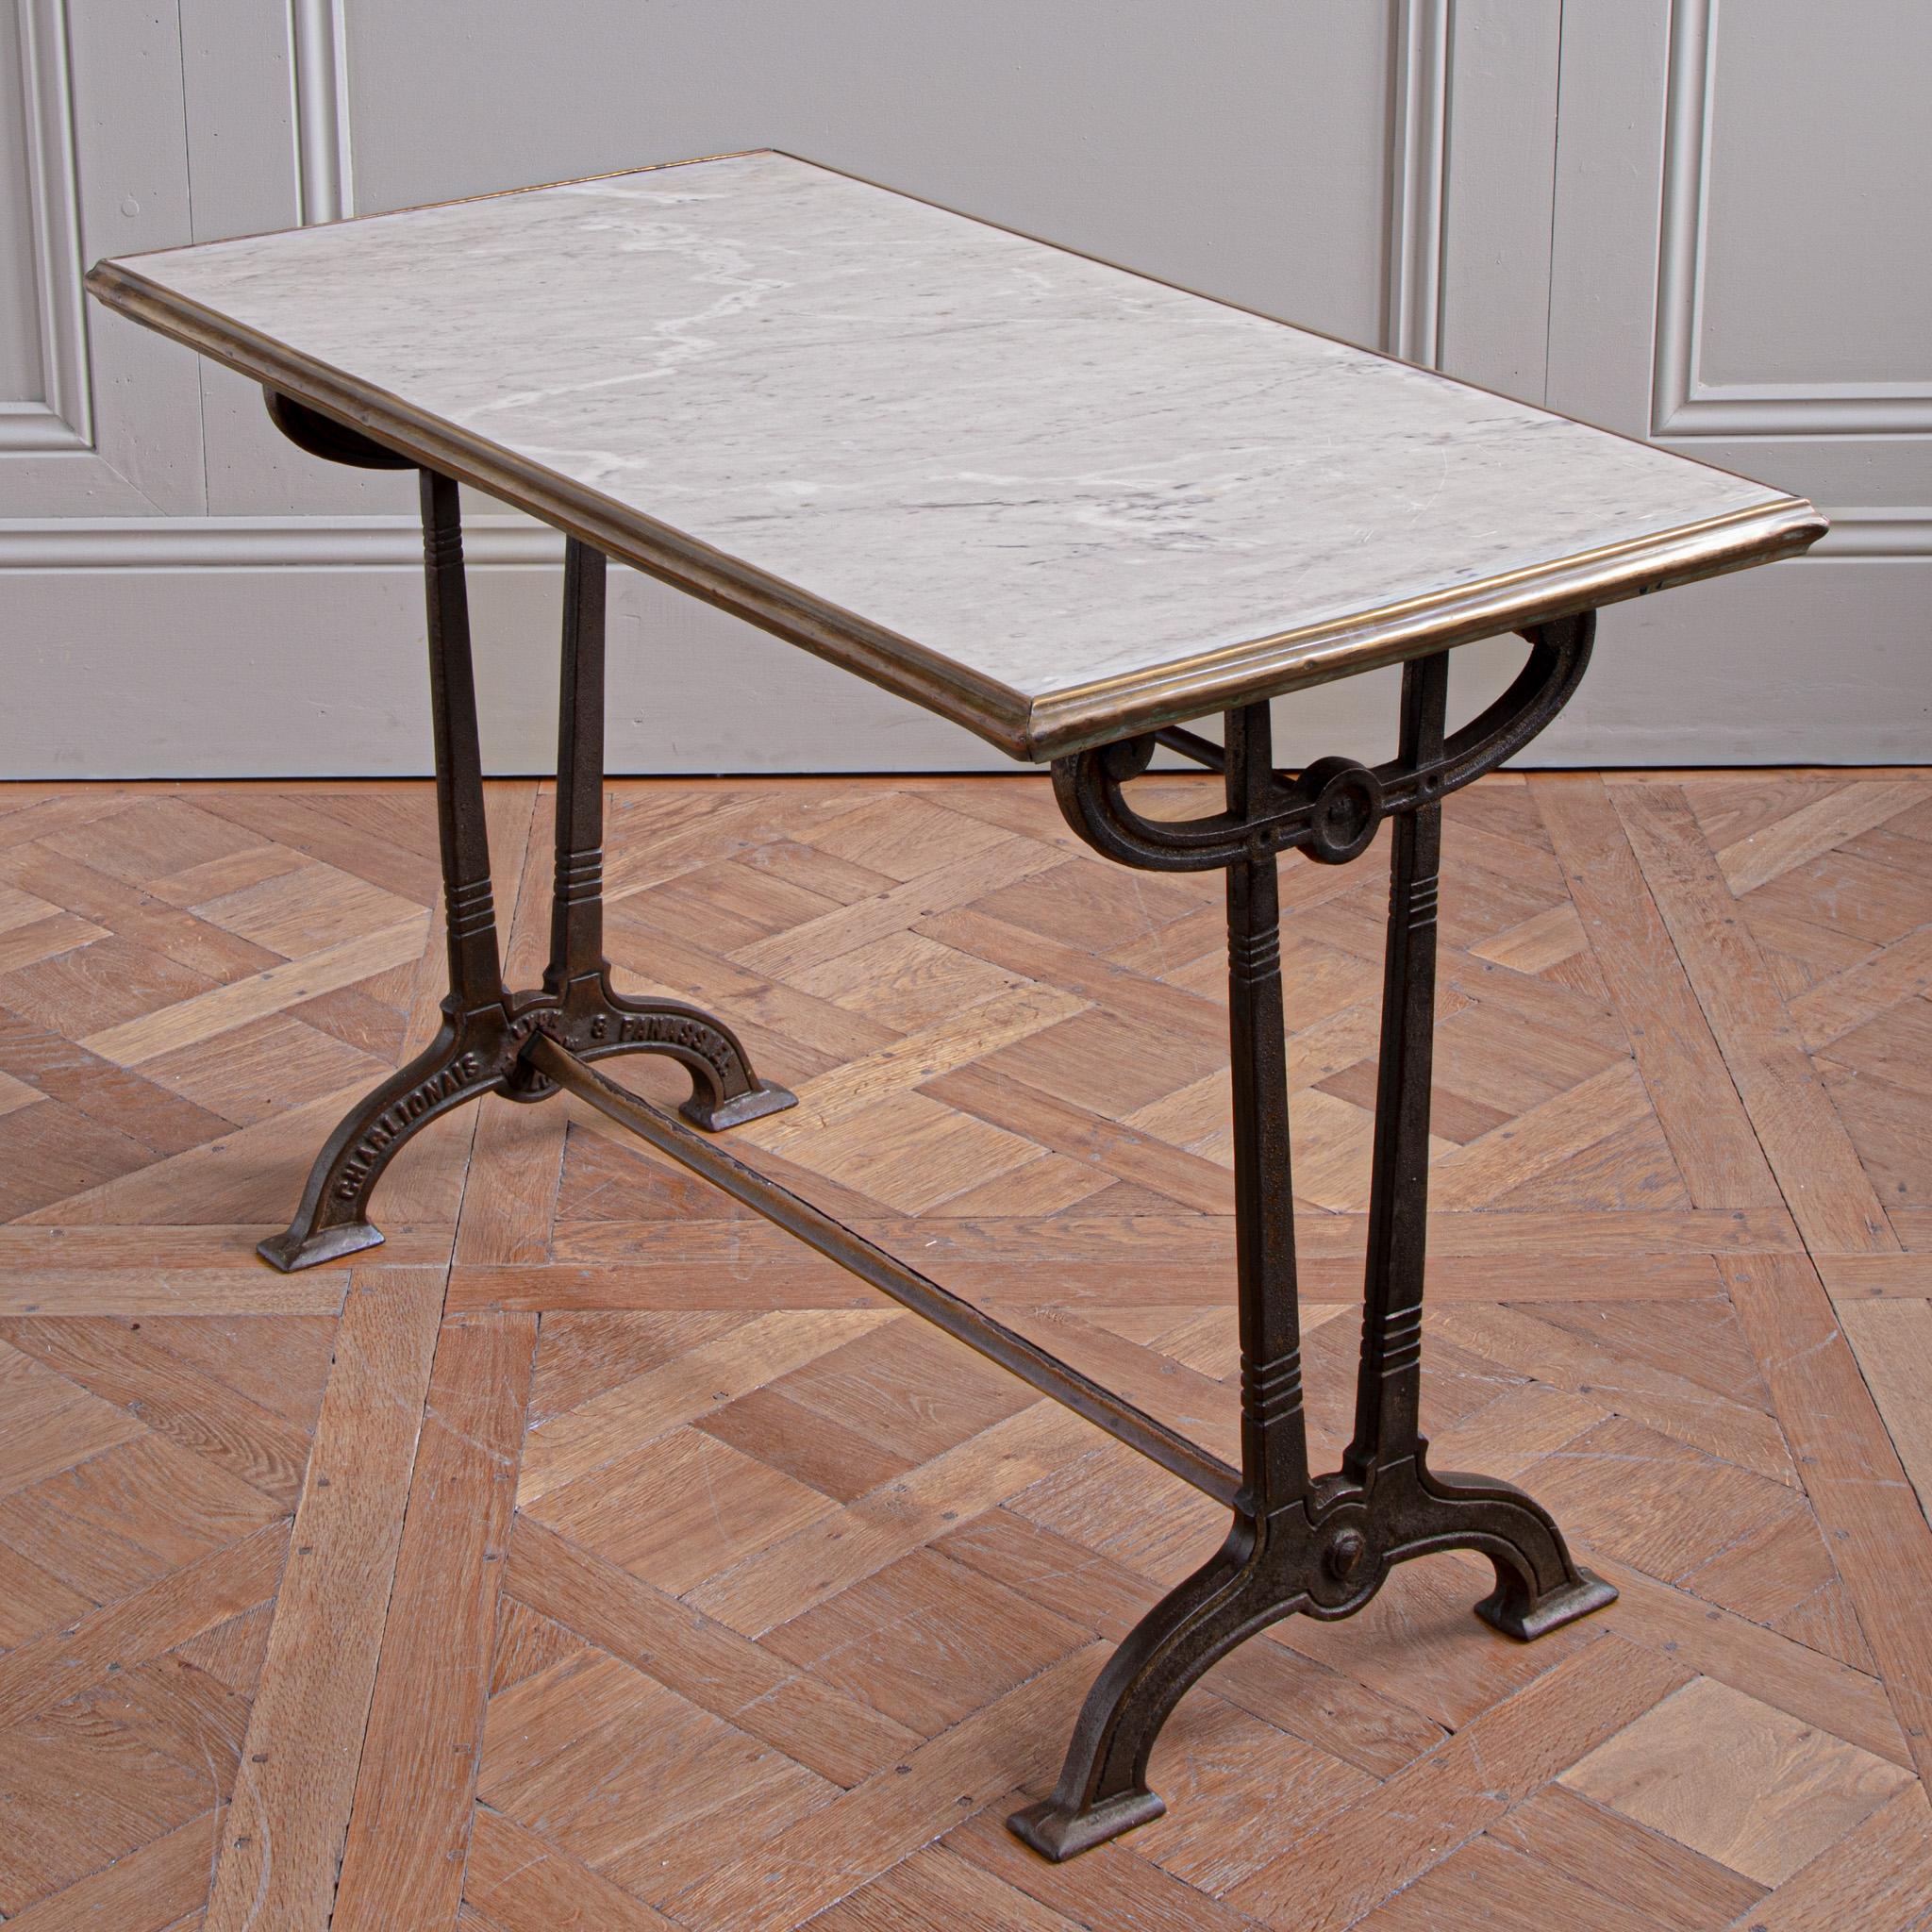 Art Nouveau Art nouveau French Bistro Table Circa 1900 by Charlionais & Panassier For Sale